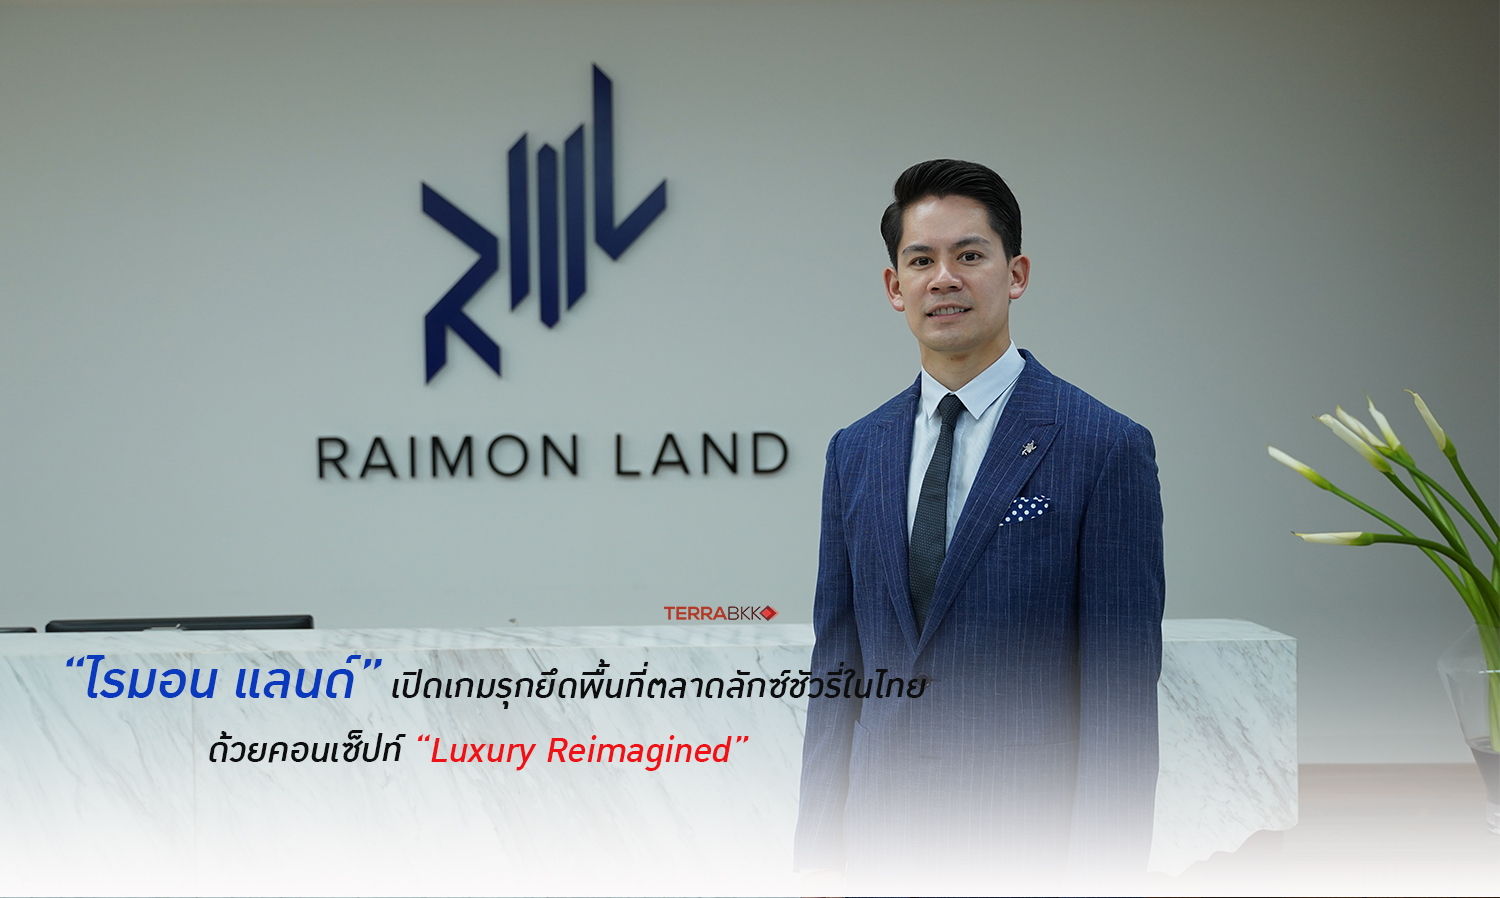 ไรมอน แลนด์ เปิดเกมรุกยึดพื้นที่ตลาดลักซ์ชัวรี่ในไทย 